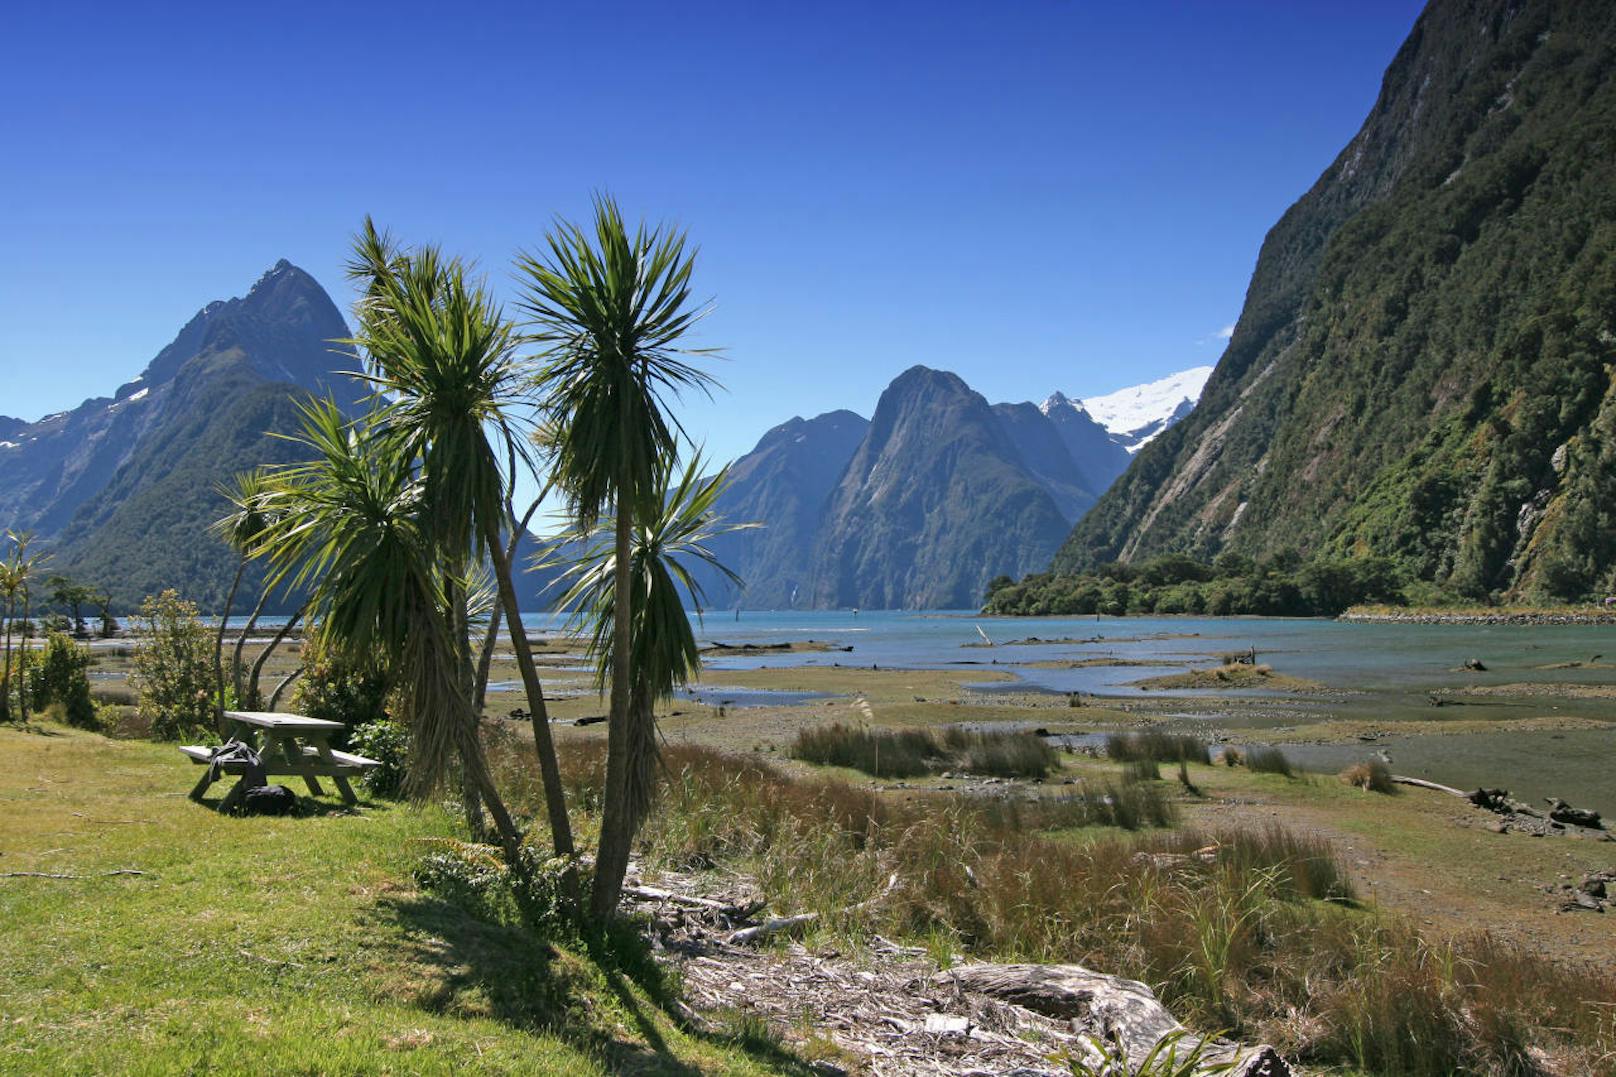 <b>1. Flitterwochen für Aktive in Neuseeland</b>

Berge, Strände, Gletscher, Vulkane, Flüsse ? Neuseeland bietet einfach alles, was Naturliebhaber und Outdoor-Fans für eine perfekte Reise brauchen. Frisch Vermählte starten hier in gigantischer Kulisse in das Abenteuer Ehe. Entdecken Sie gemeinsam das Dorf der Hobbits, besteigen Sie Vulkane und holen Sie sich eine ordentliche Portion Adrenalin in der Stadt der Abenteuersportler, Queenstown. Unsere zwei absoluten Top-Tipps für Verliebte: die romantischen Sonnenuntergänge an der Westküste und Canyoning durch den Skippers Canyon. Das schweißt garantiert fast so sehr zusammen, wie das Ja-Wort am Standesamt?